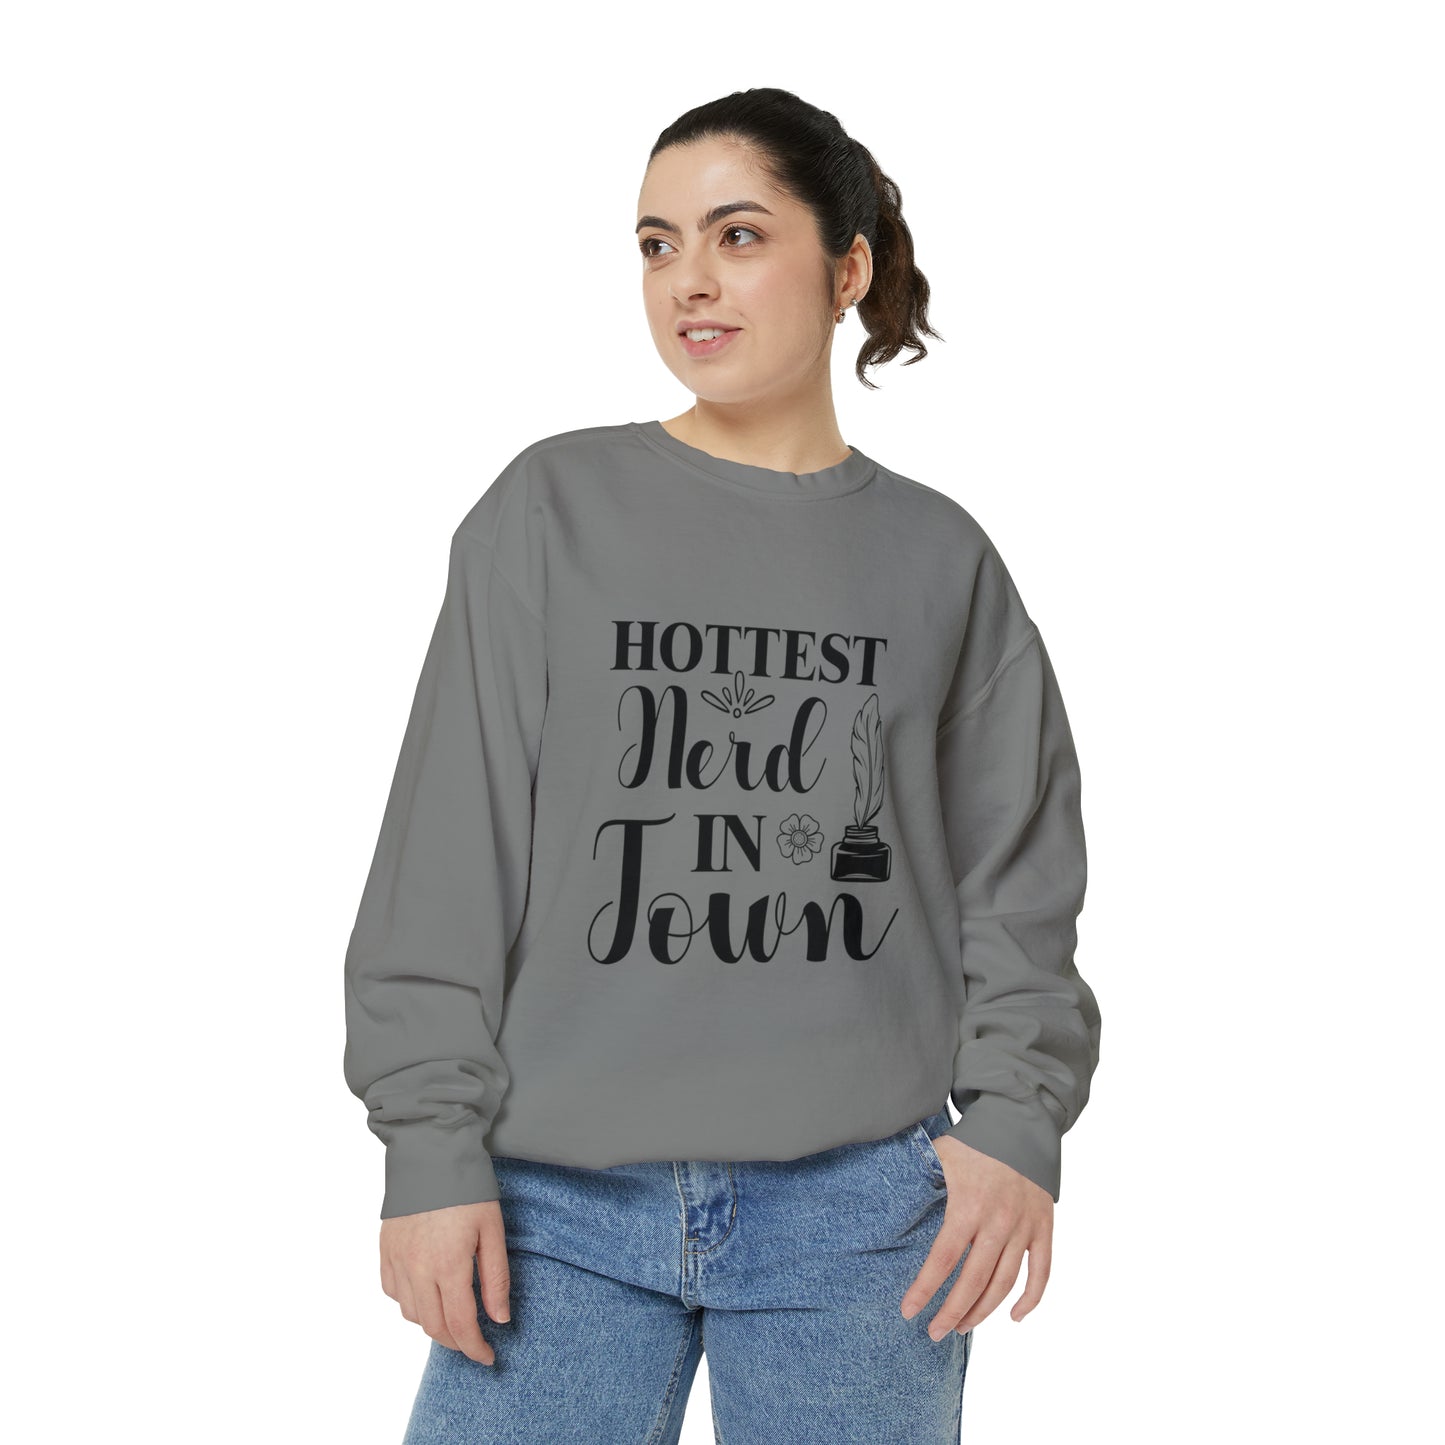 "Hottest Nerd in Town" Unisex Garment-Dyed Sweatshirt